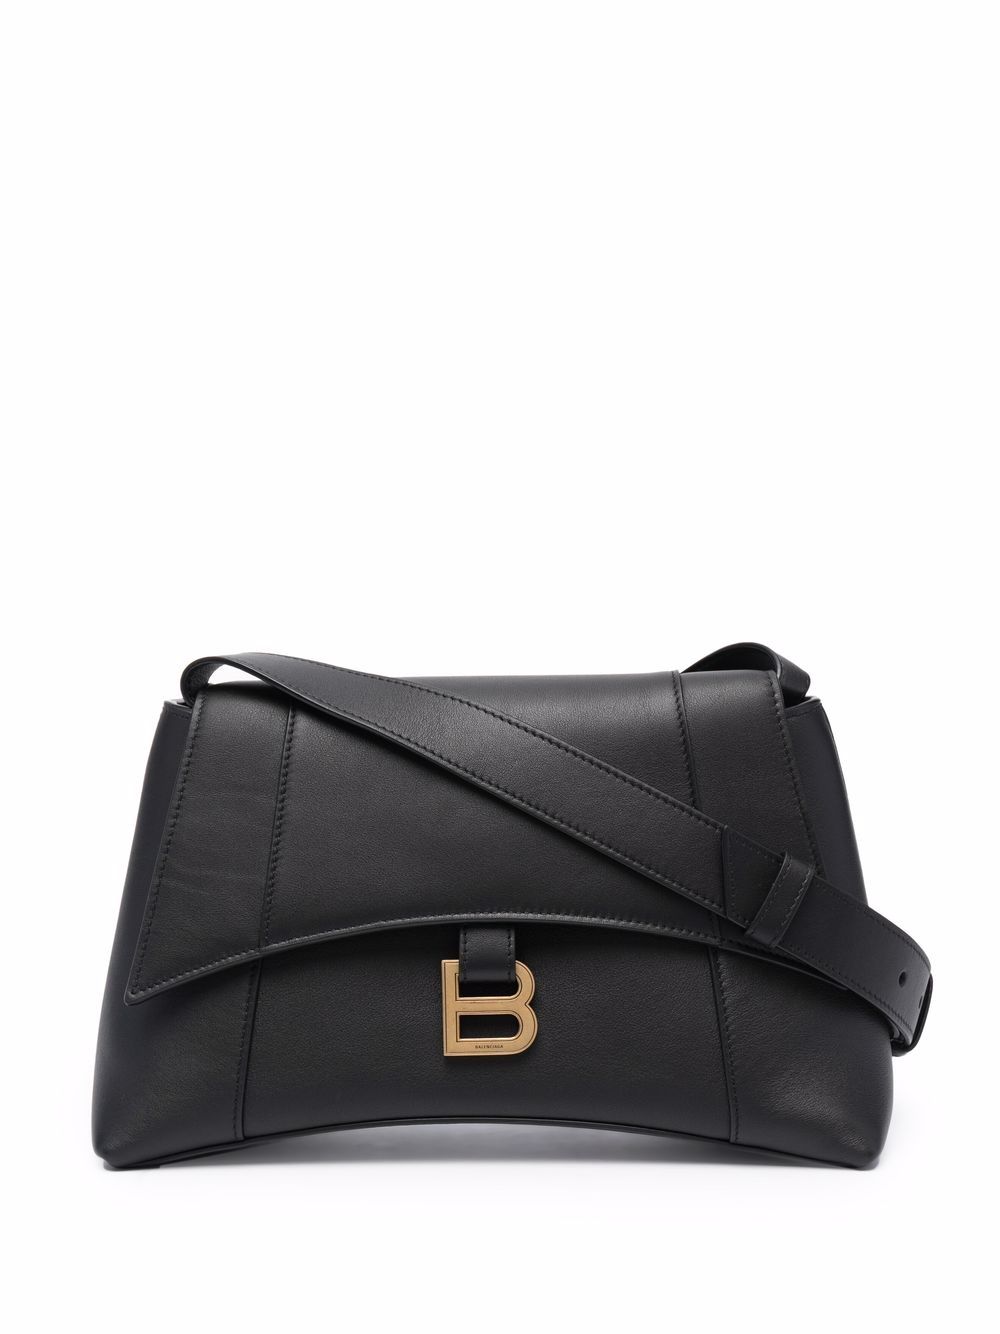 Balenciaga small Soft Hourglass shoulder bag - Black